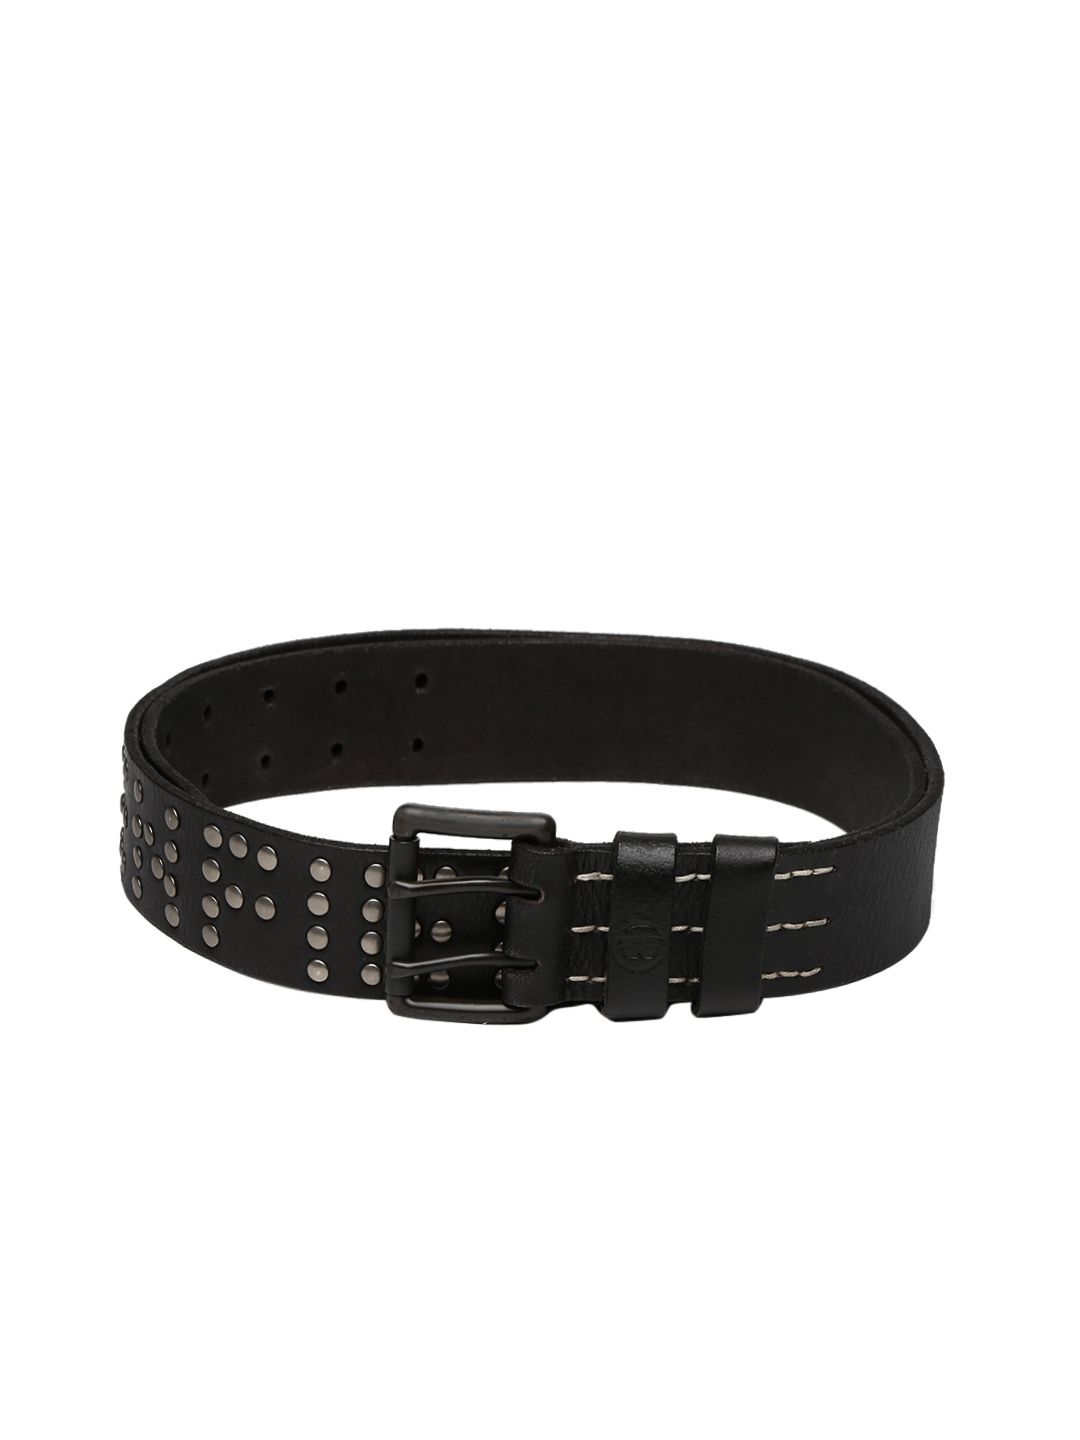 Buy Royal Enfield Men Black Studded Genuine Leather Belt - Belts for ...